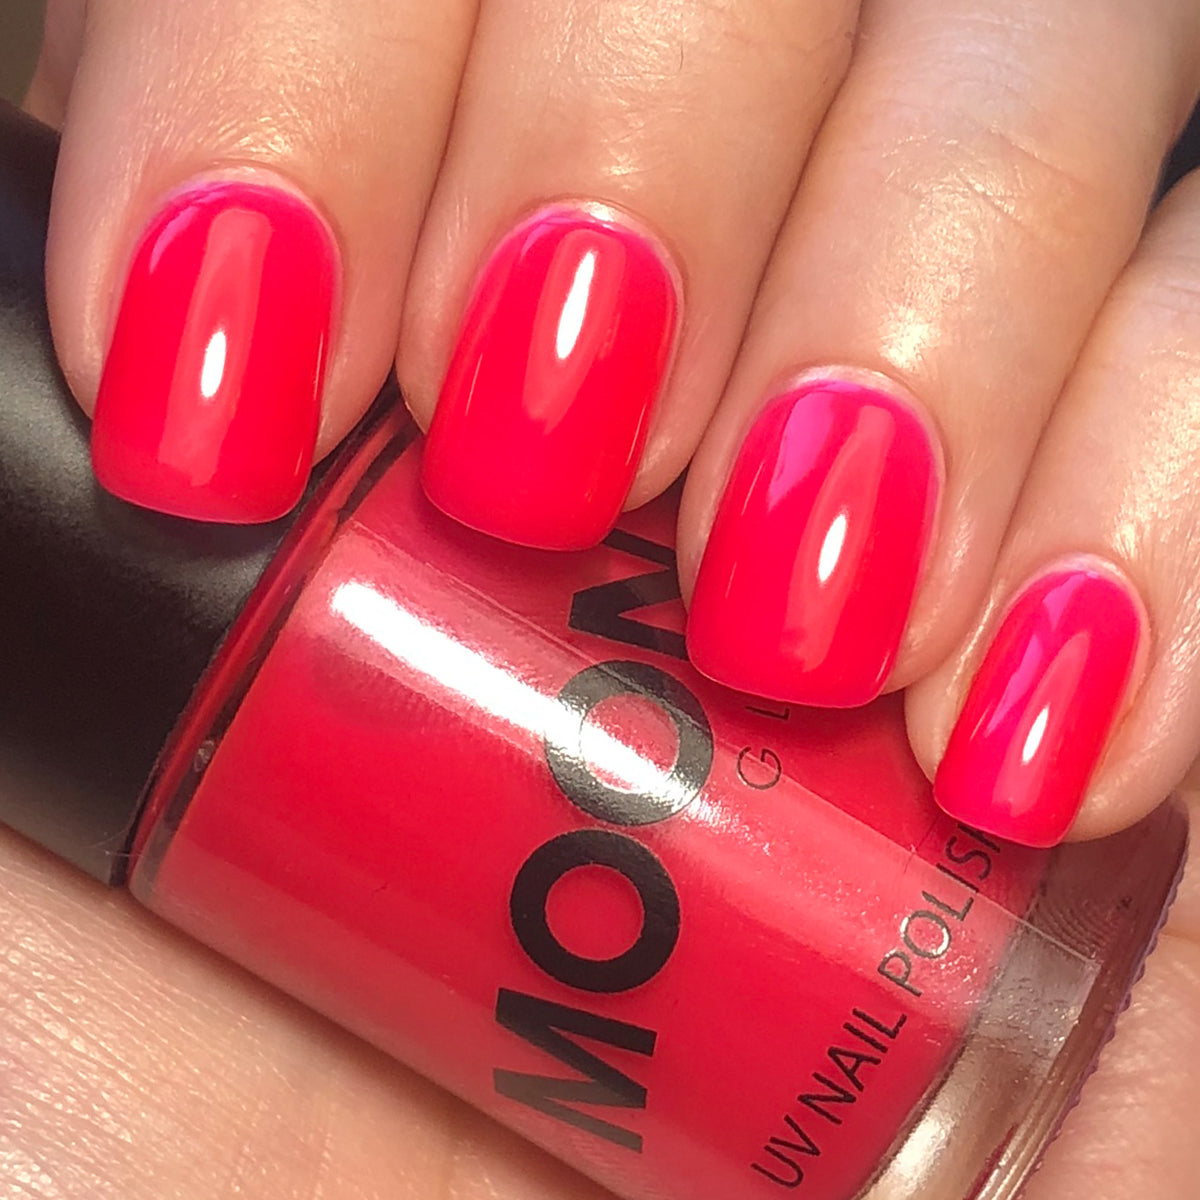 Neon Hot Pink Nail Polish Hand Mixed by Gr8 Nails - Etsy